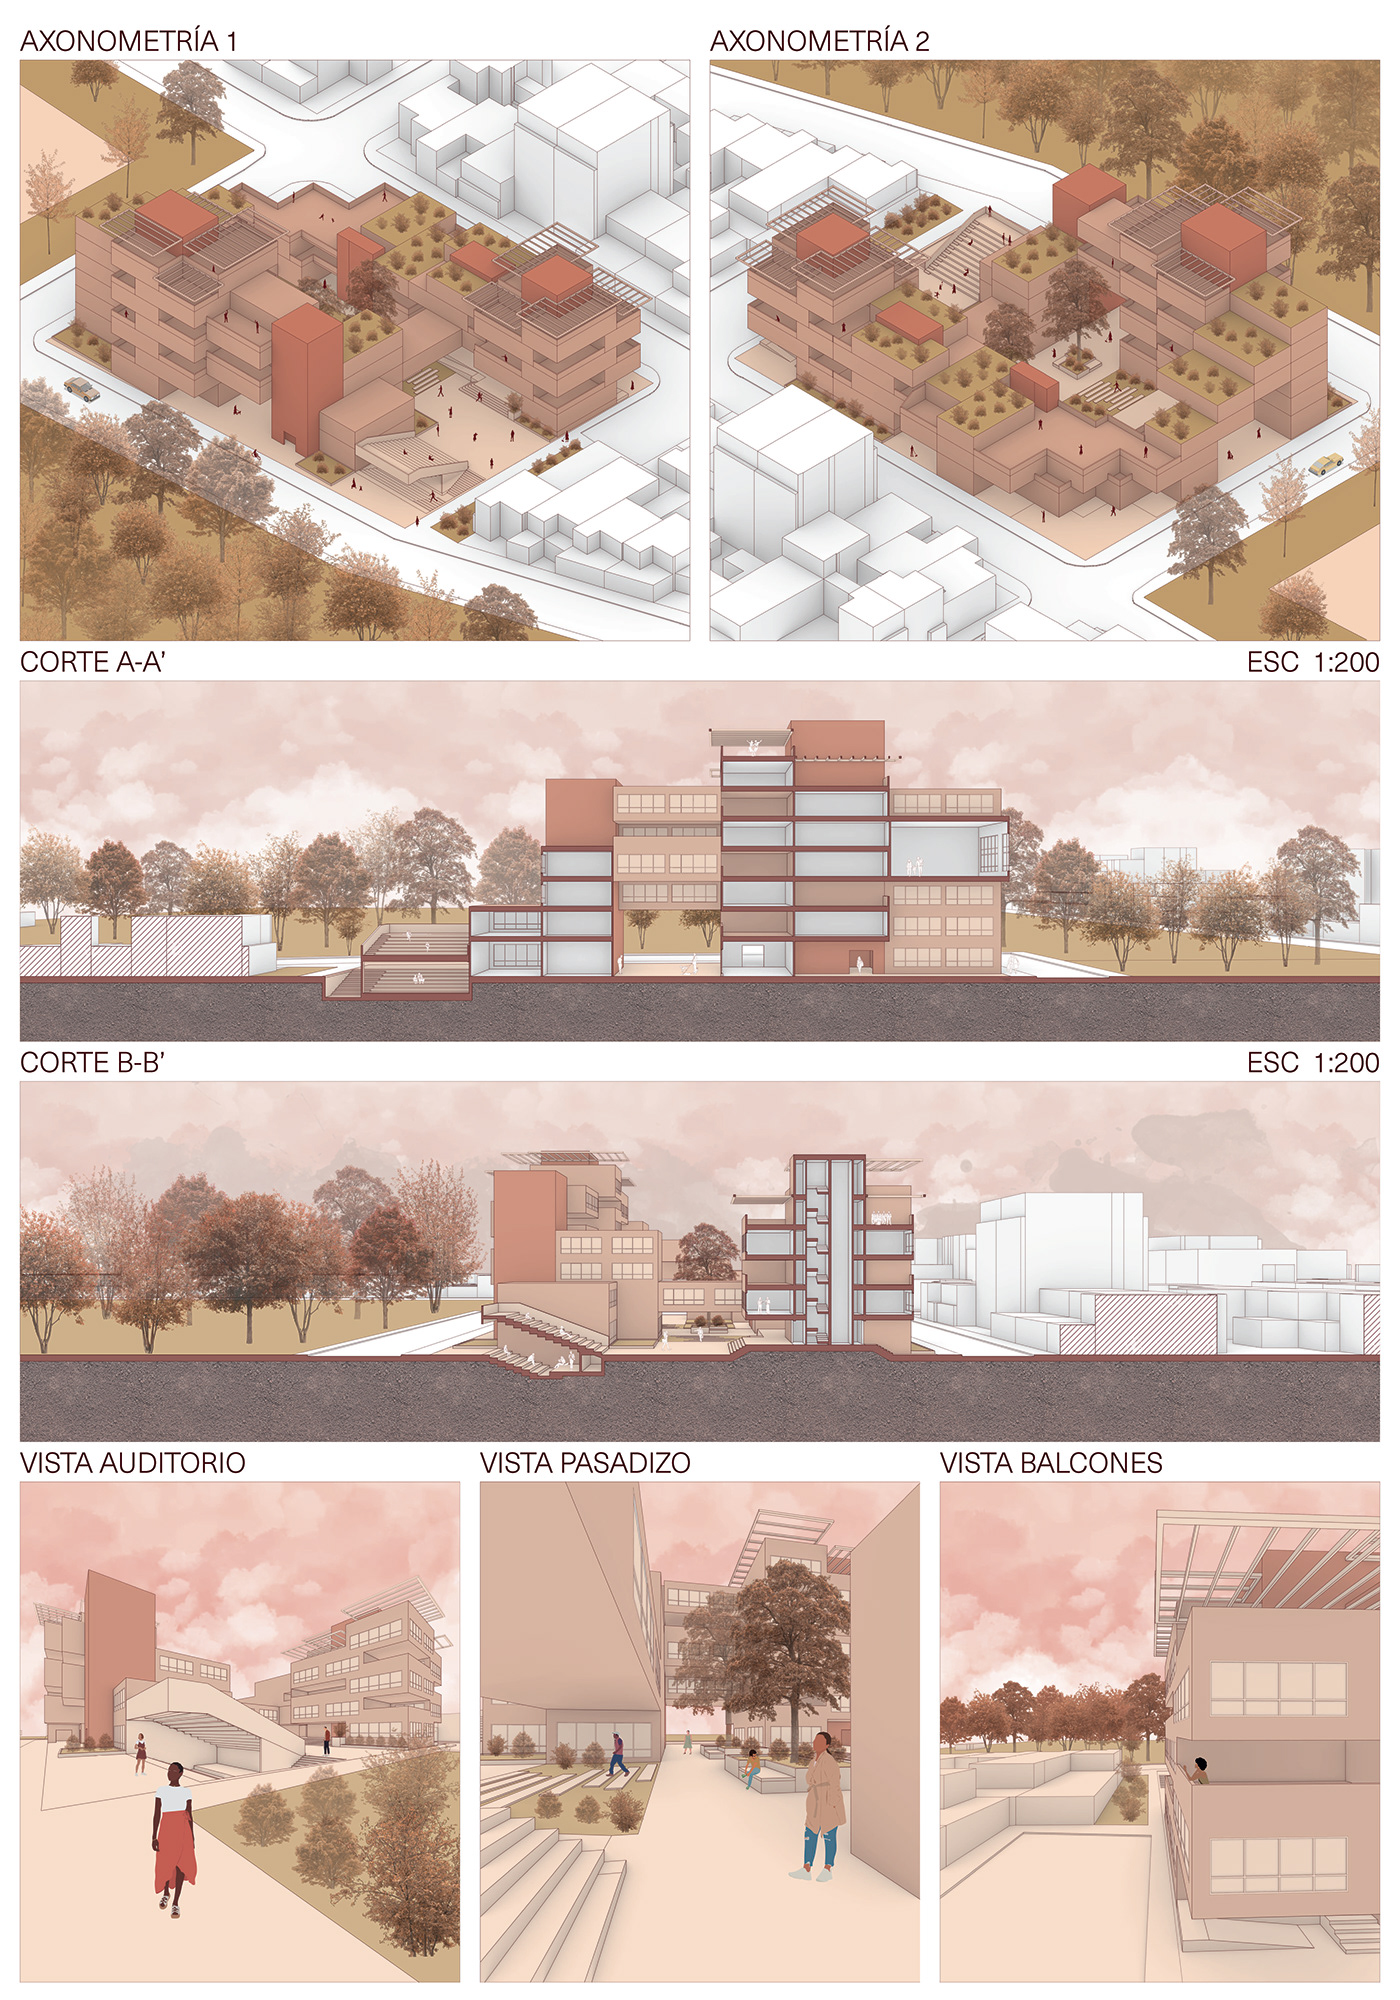 ARQUNIANDES TODO_PARTES arquitectura ilustracion vivienda visualization ARQT-2201 ARQT2360 EJERCICIO_03 feliperodriguez